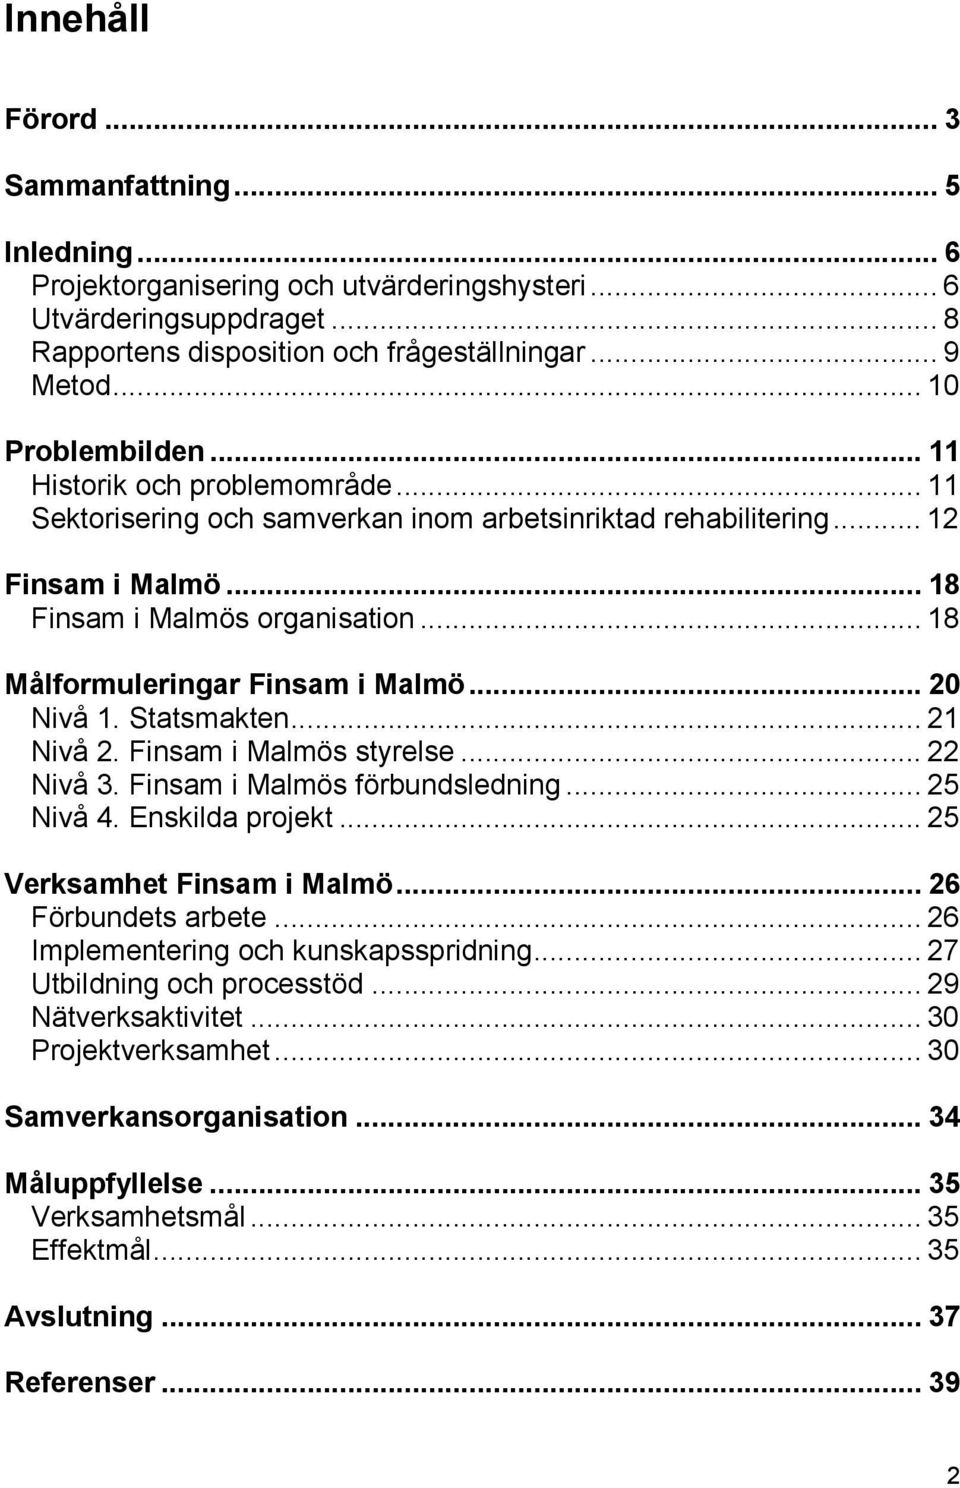 .. 18 Målformuleringar Finsam i Malmö... 20 Nivå 1. Statsmakten... 21 Nivå 2. Finsam i Malmös styrelse... 22 Nivå 3. Finsam i Malmös förbundsledning... 25 Nivå 4. Enskilda projekt.